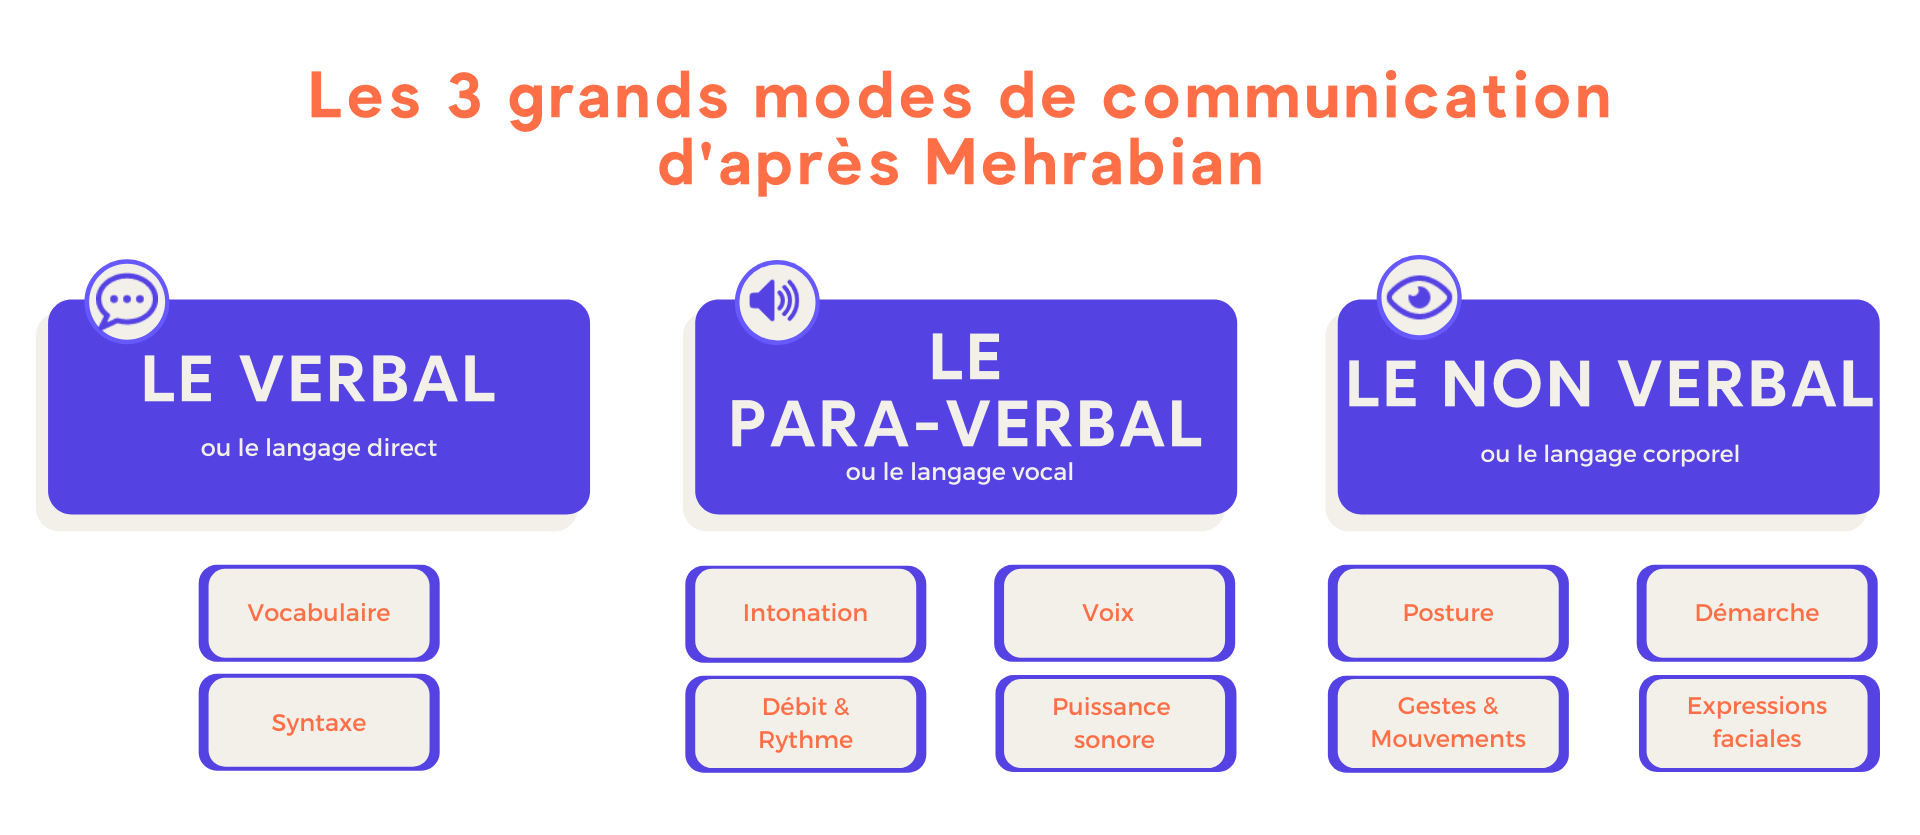 Les 3 modes de communication selon Mehrabian